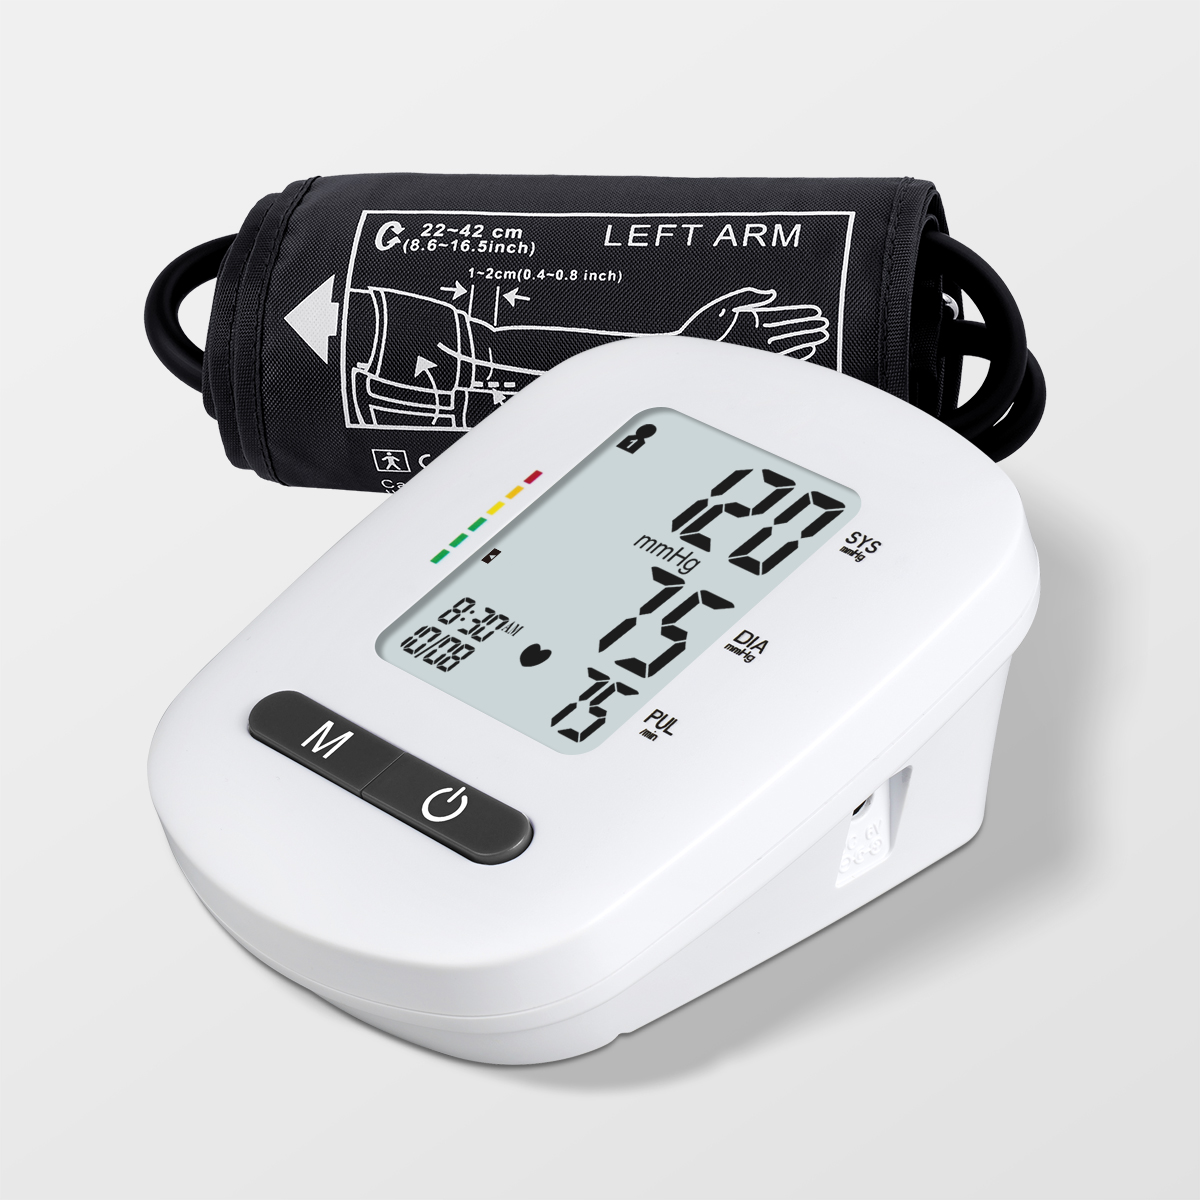 Monitor di Pressione Sanguigna Medica Bluetooth Usa Tensiometru Digitale di Voce